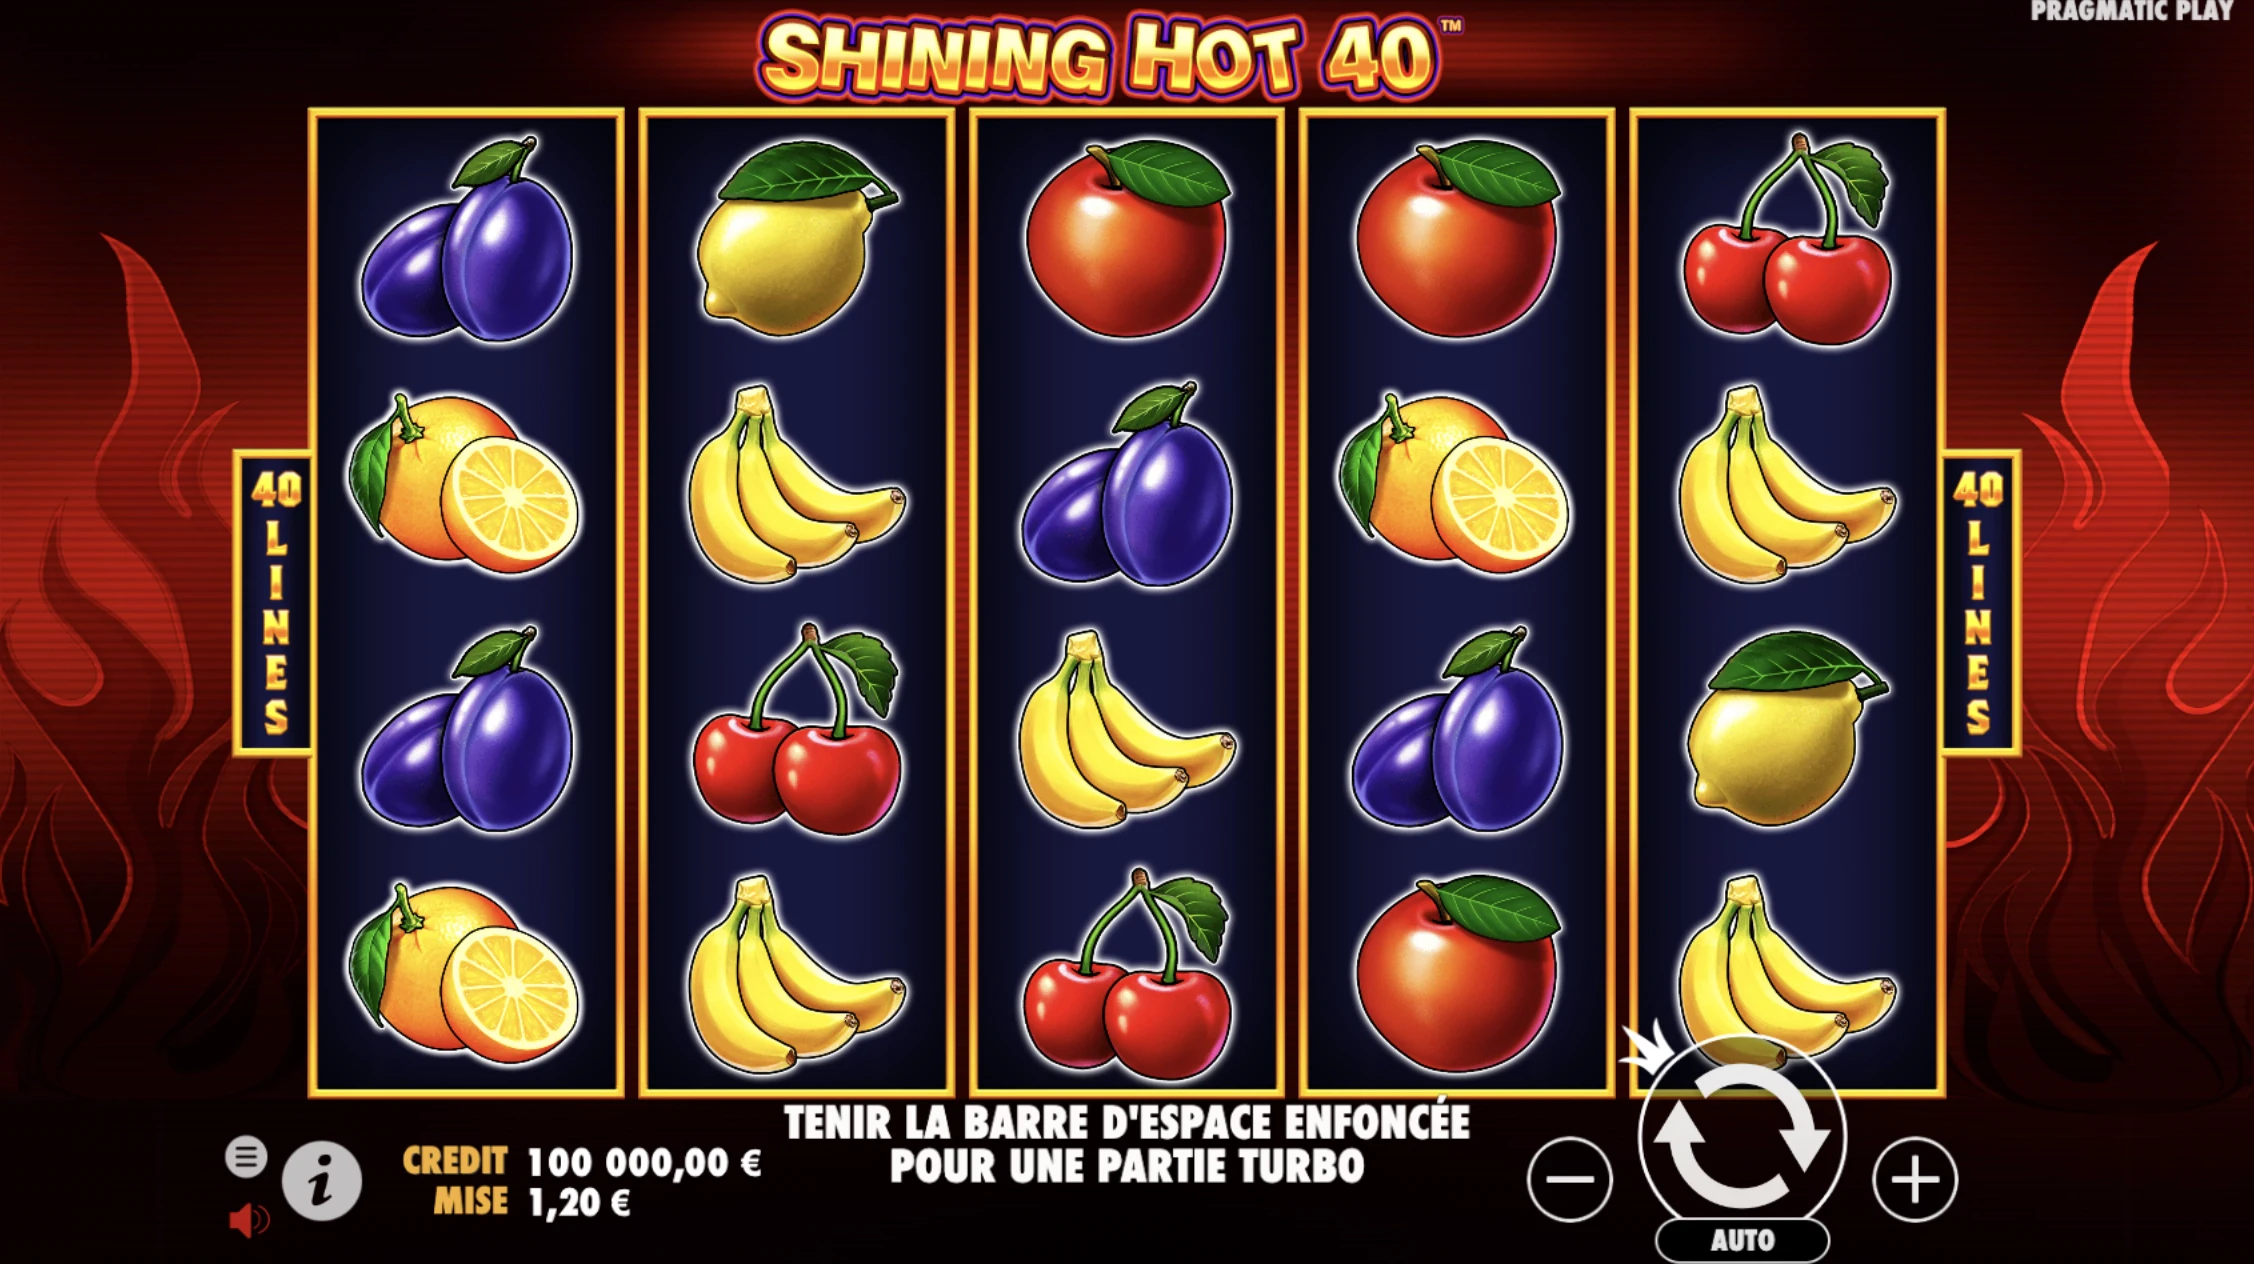 Shining Hot 40 est une machine à sous dotée d’une grille de départ avec 5 colonnes et 4 symboles